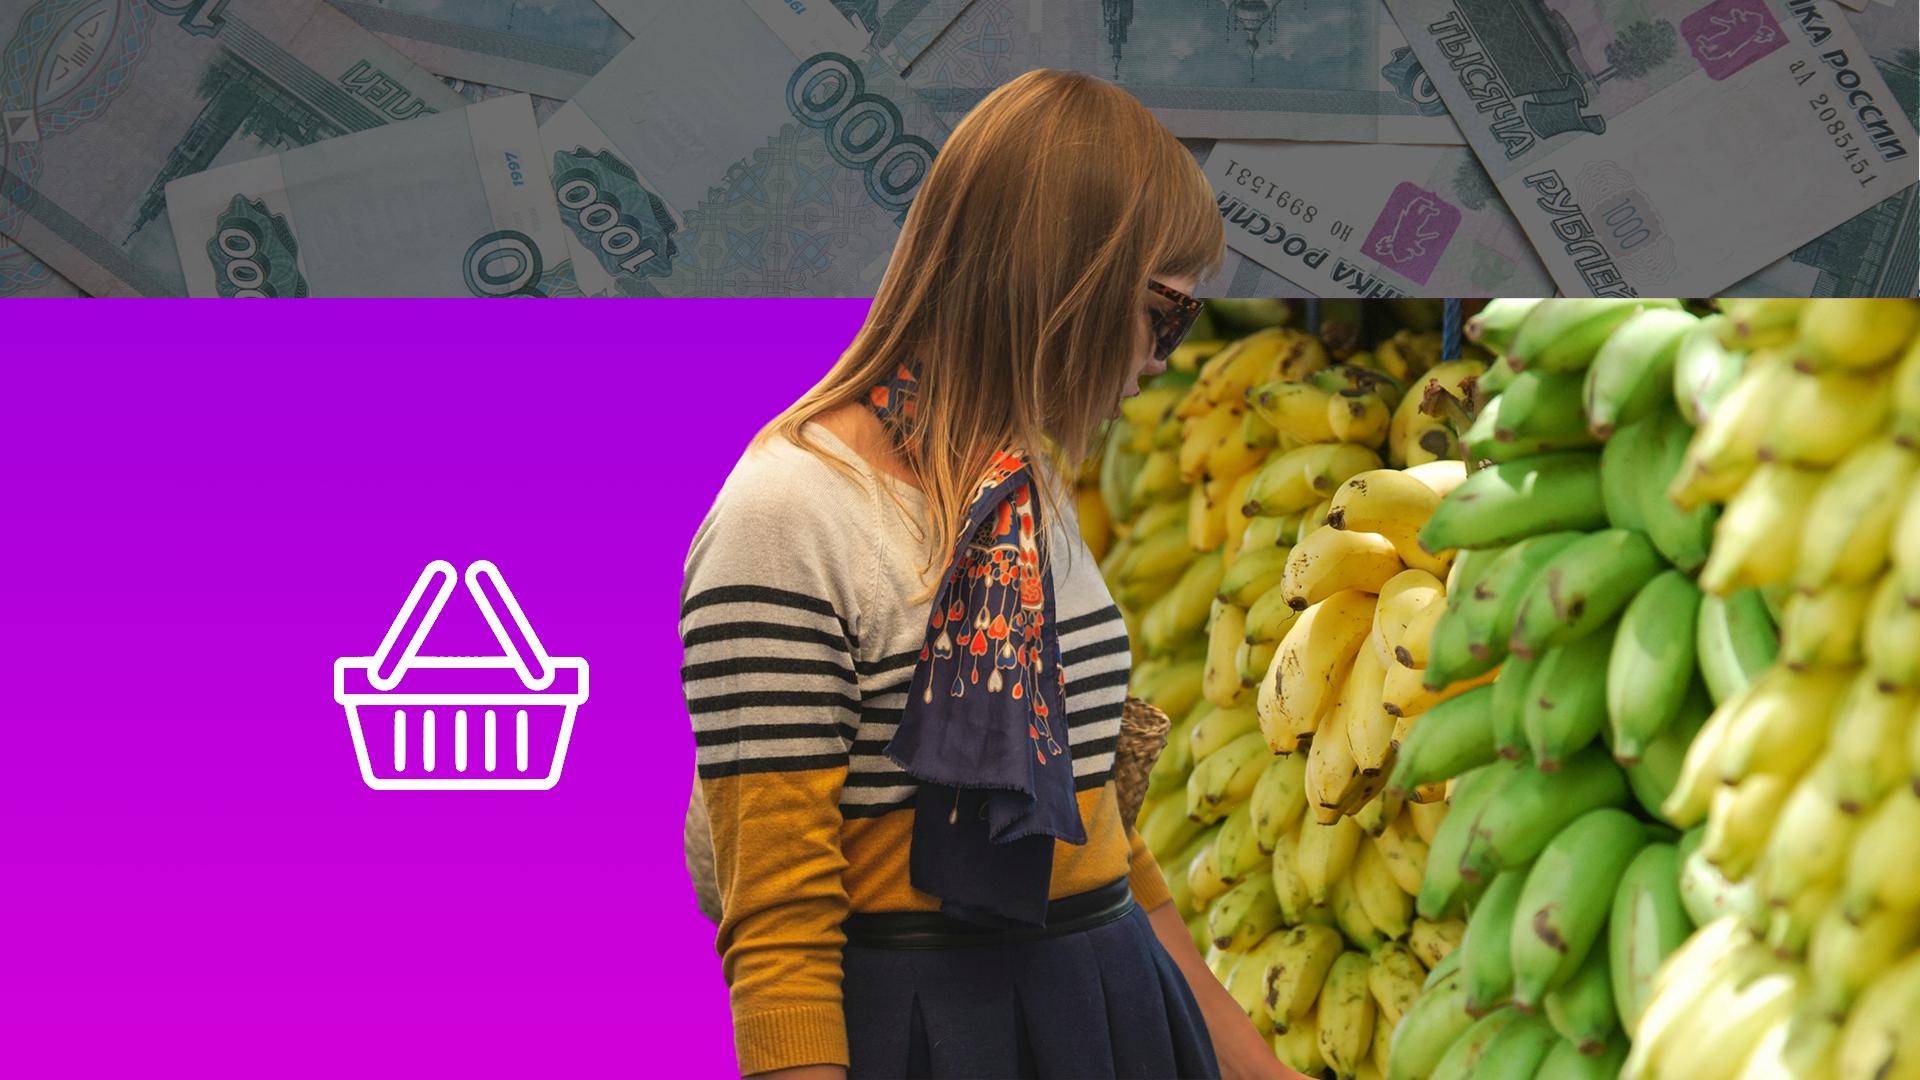 Неподъёмные бананы: какие фрукты вырастут в цене и почему бороться с этим будет капитализм